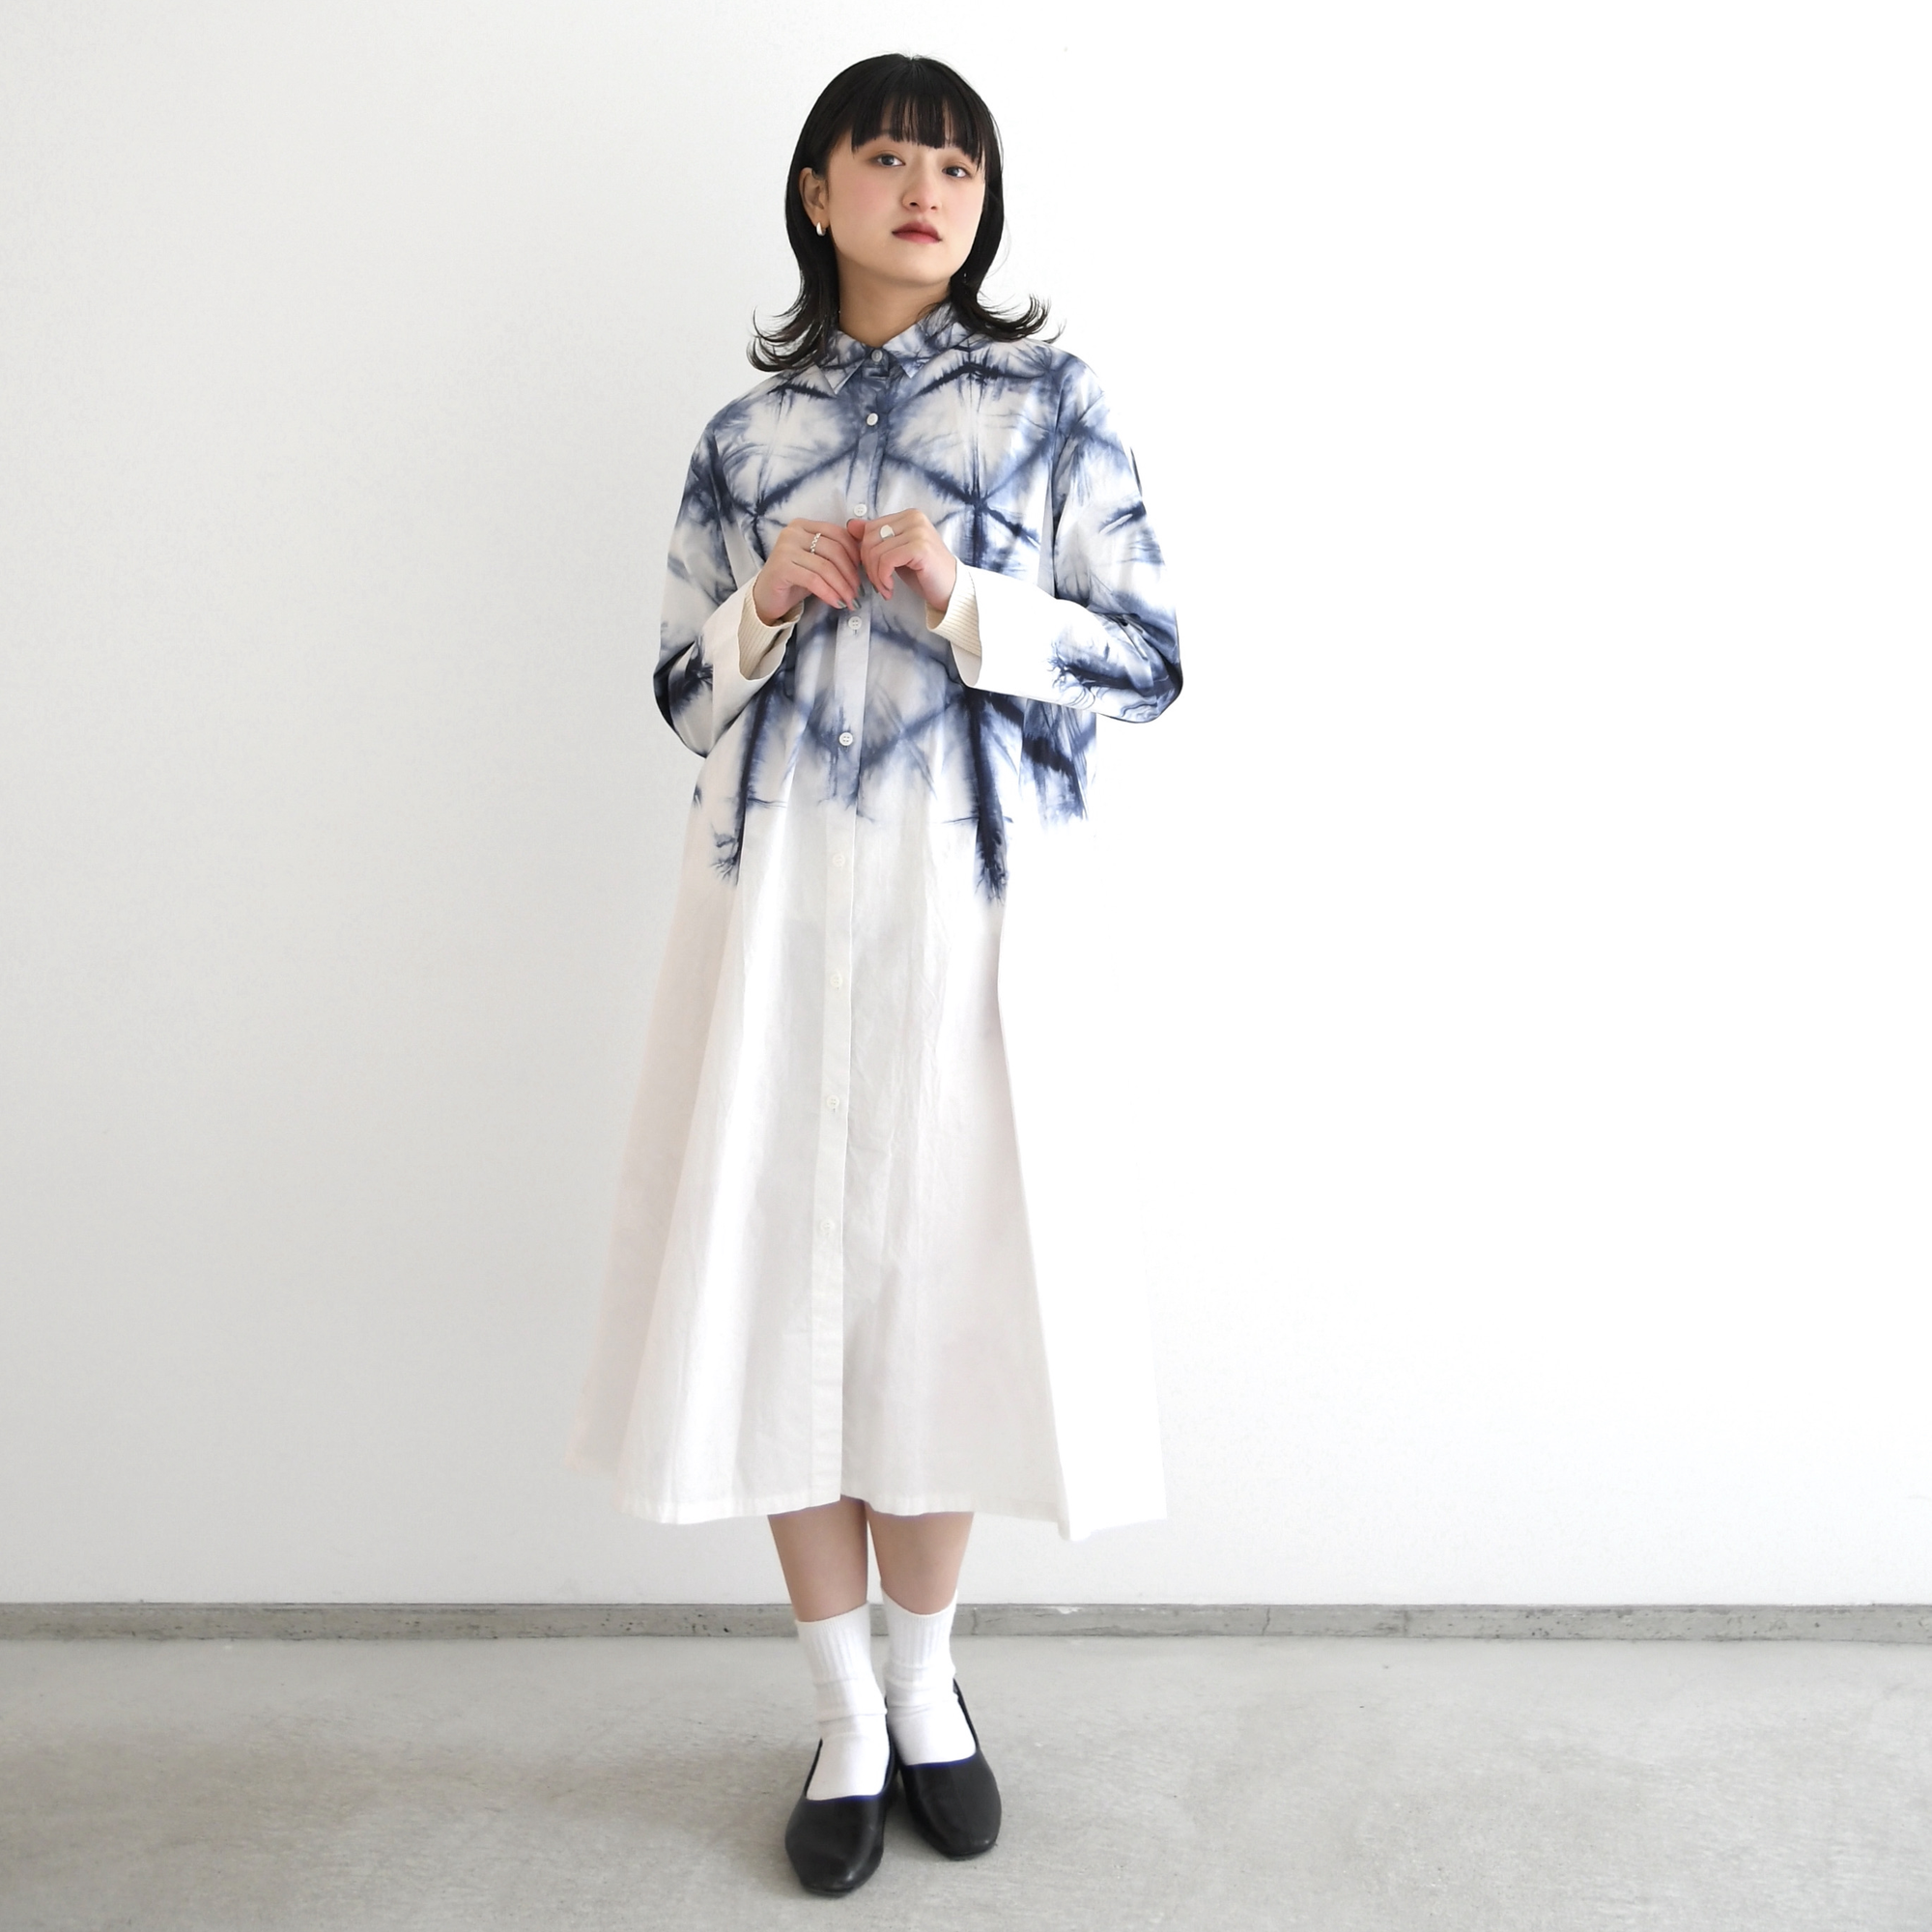 Sekka Shibori Long Shirt Dresses